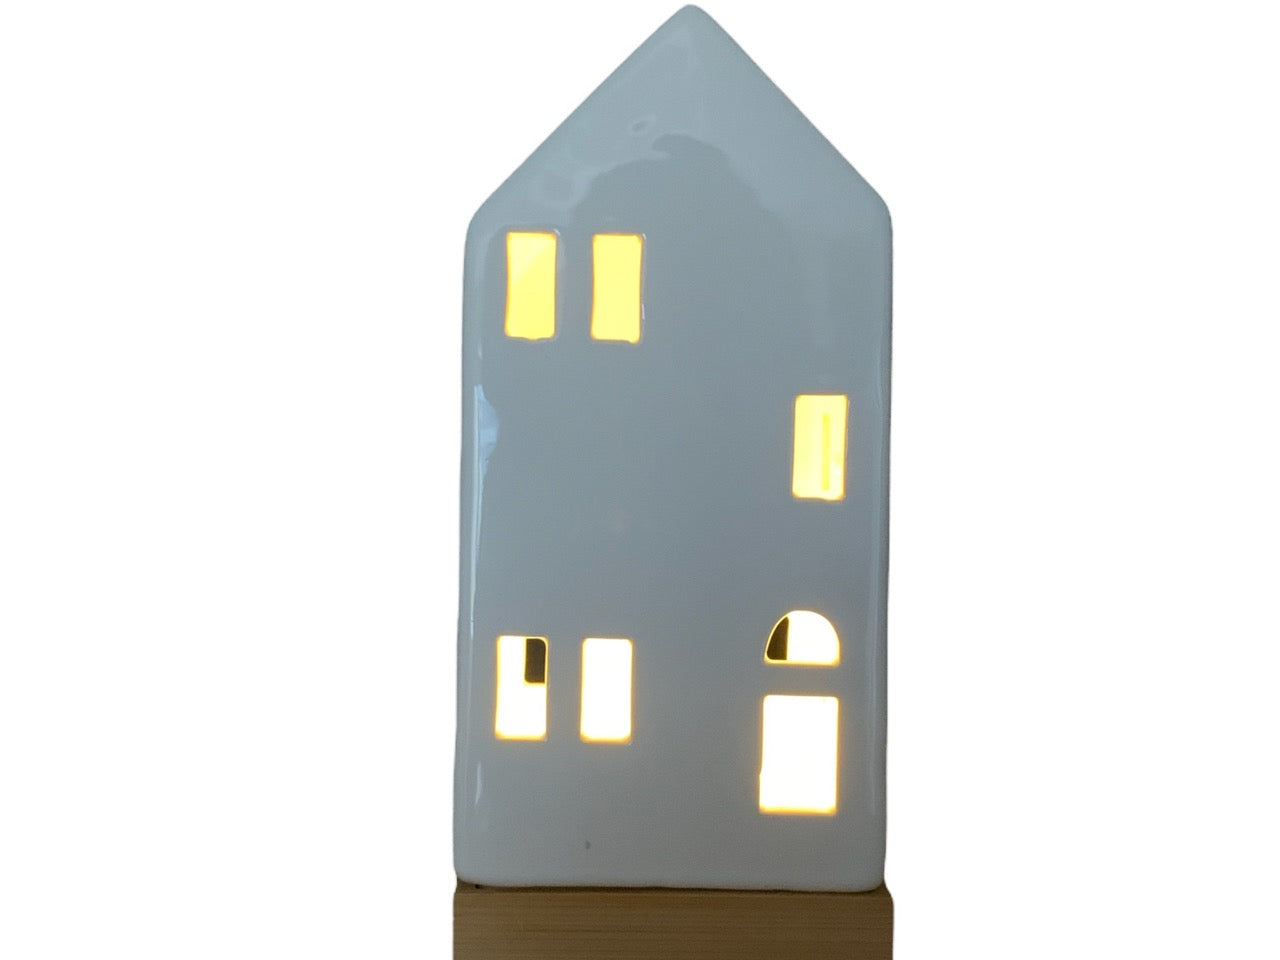 Kersthuisje van porselein op een houten voet met een brandend lampje